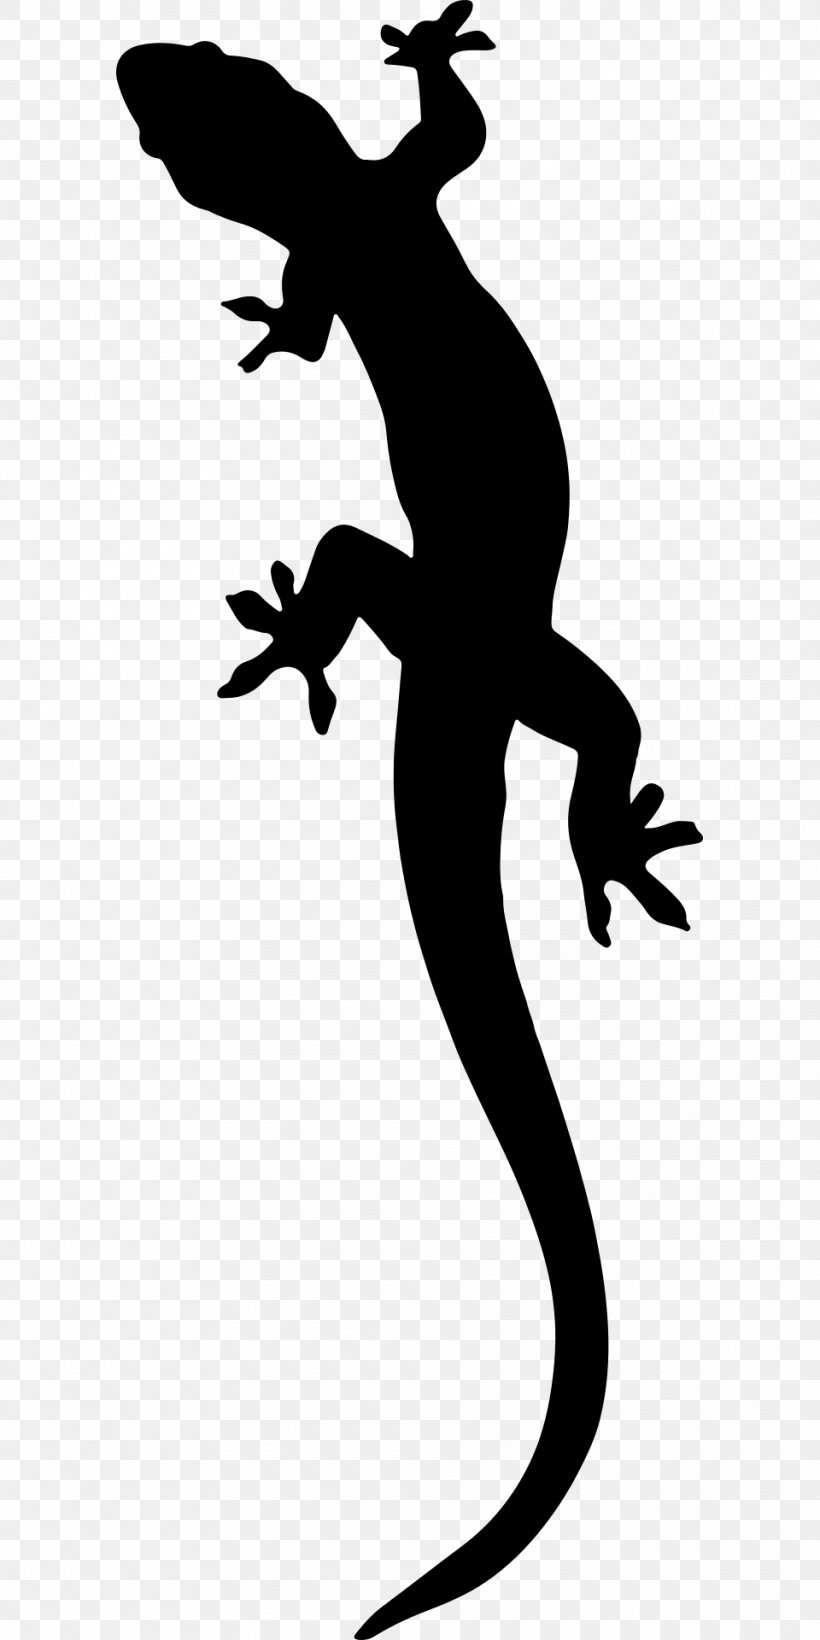 Salamander Lizard Clip Art, PNG, 960x1920px, Salamander, Alpine Salamander, Animal, Black And White, Drawing Download Free